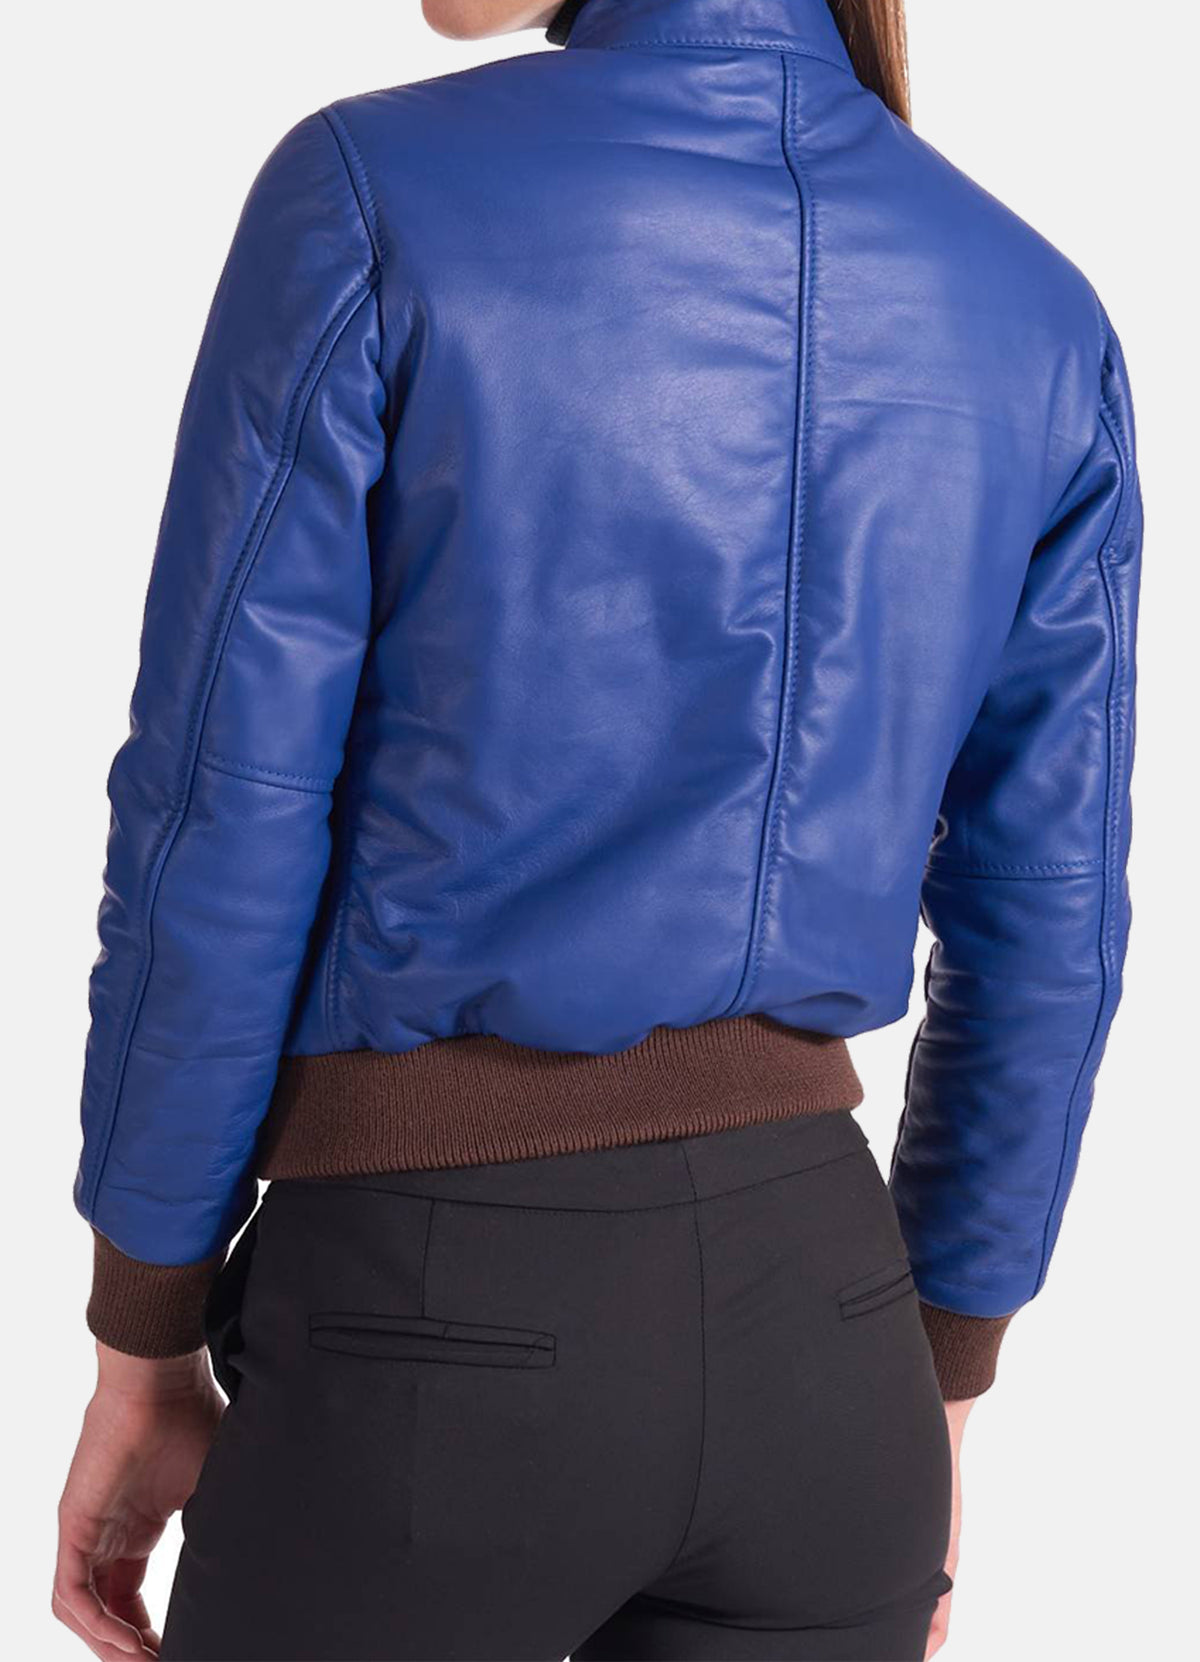 Womens Classic Blue Leather Bomber Jacket | Elite Jacket